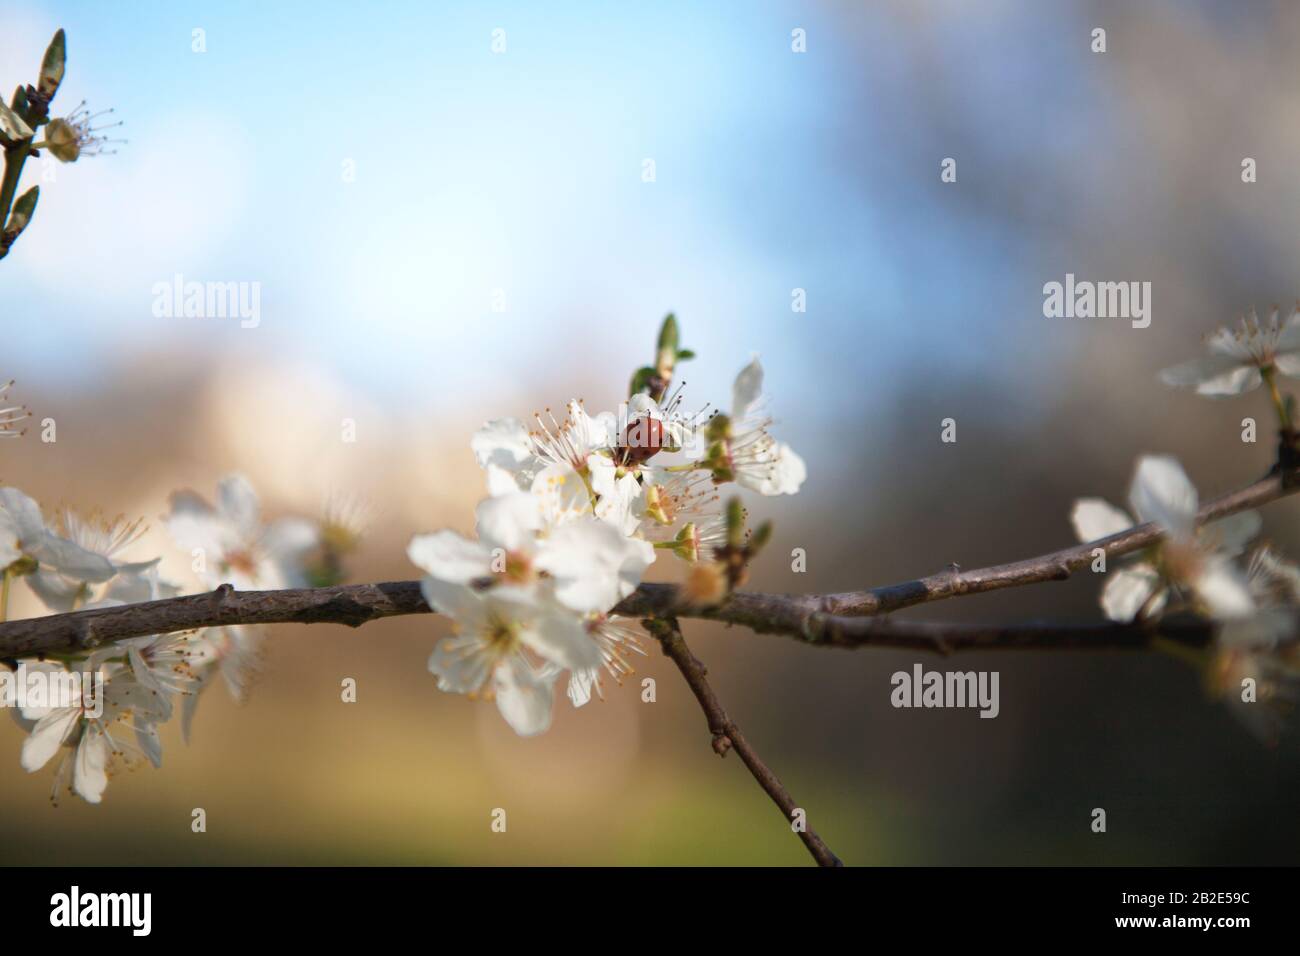 Una mariquita (mariquita) en flor de manzana. Foto de stock